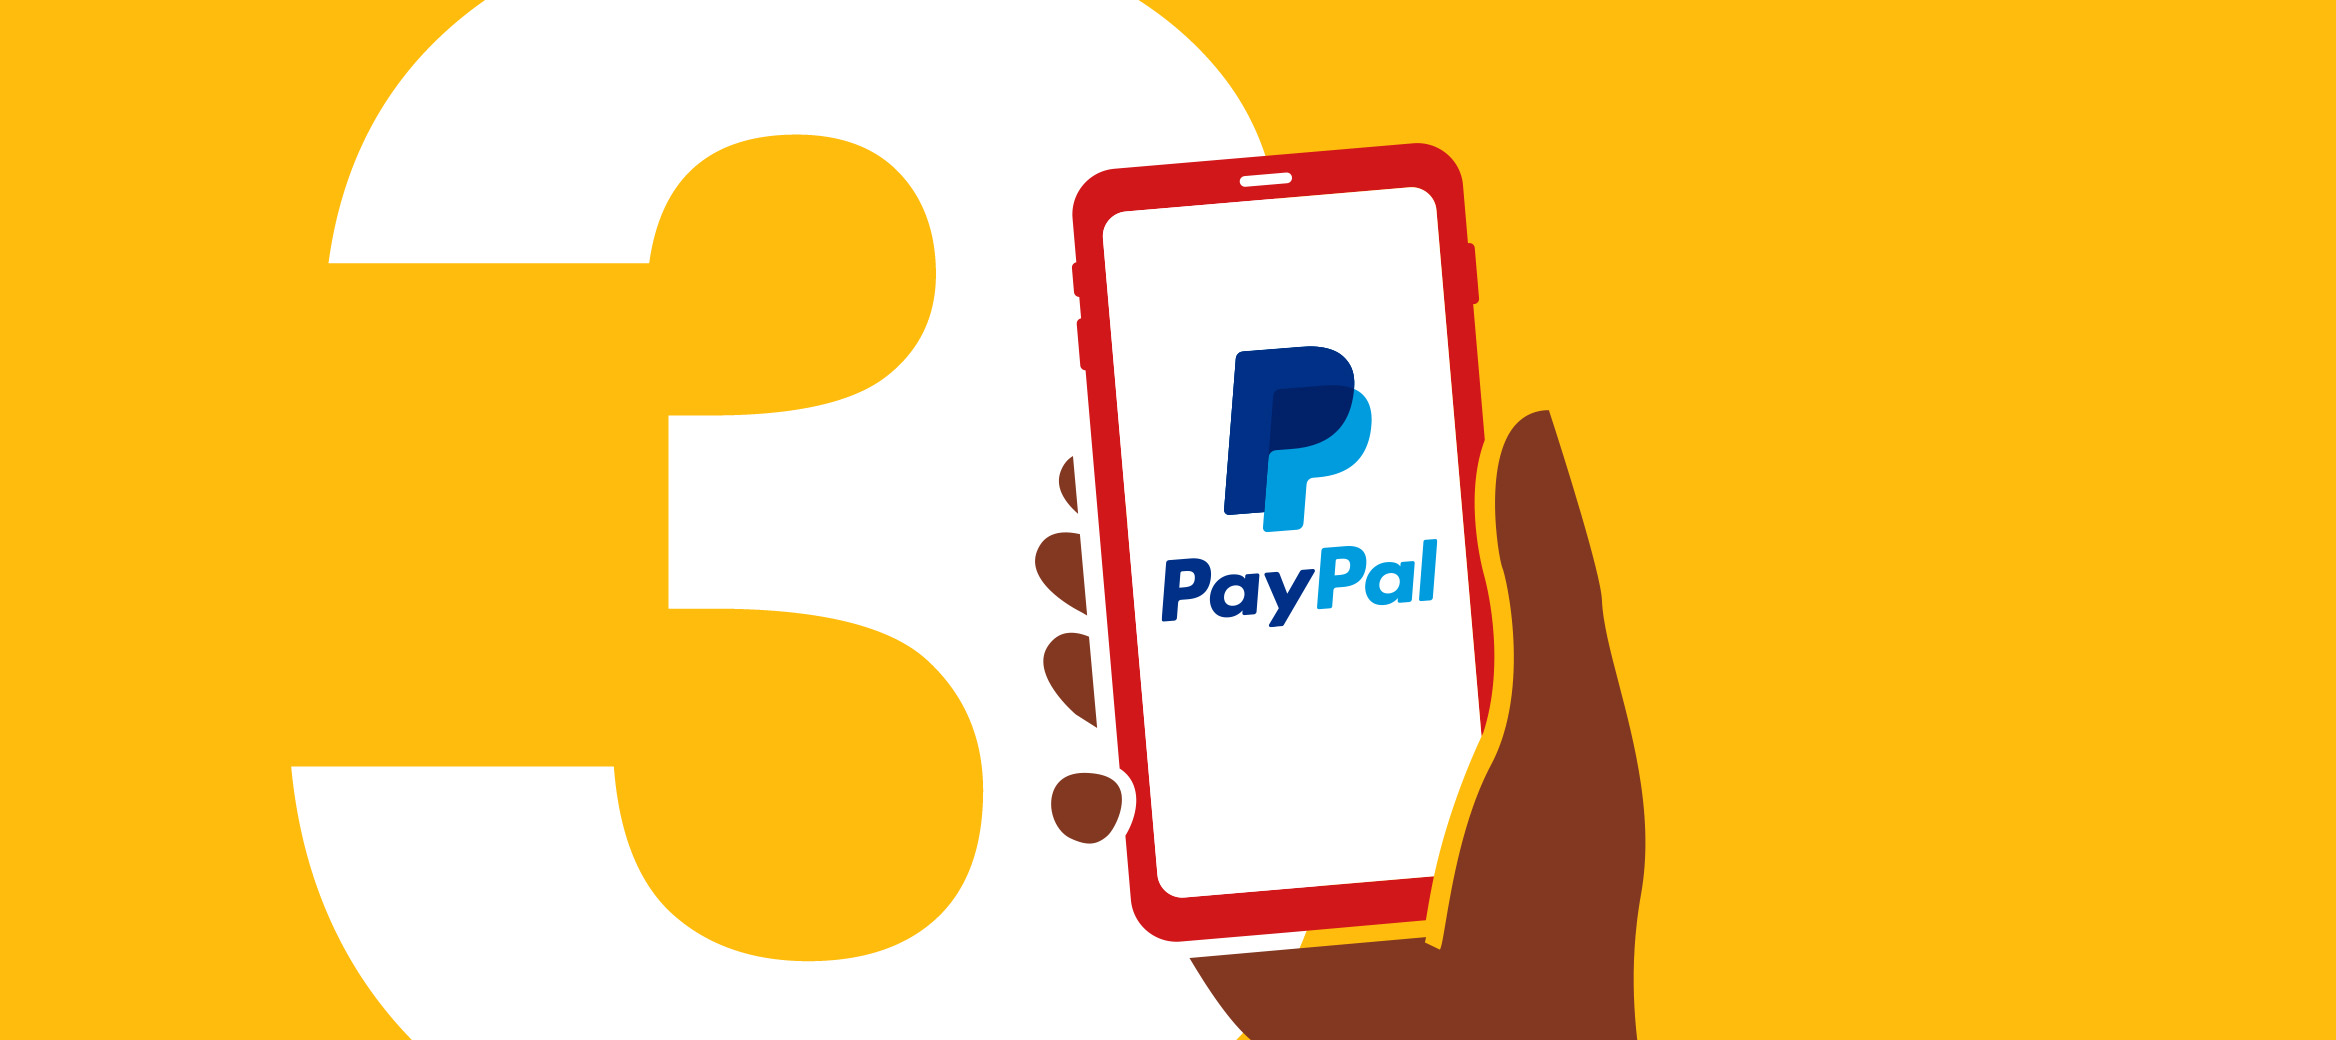 3. Smart bezahlen mit PayPal